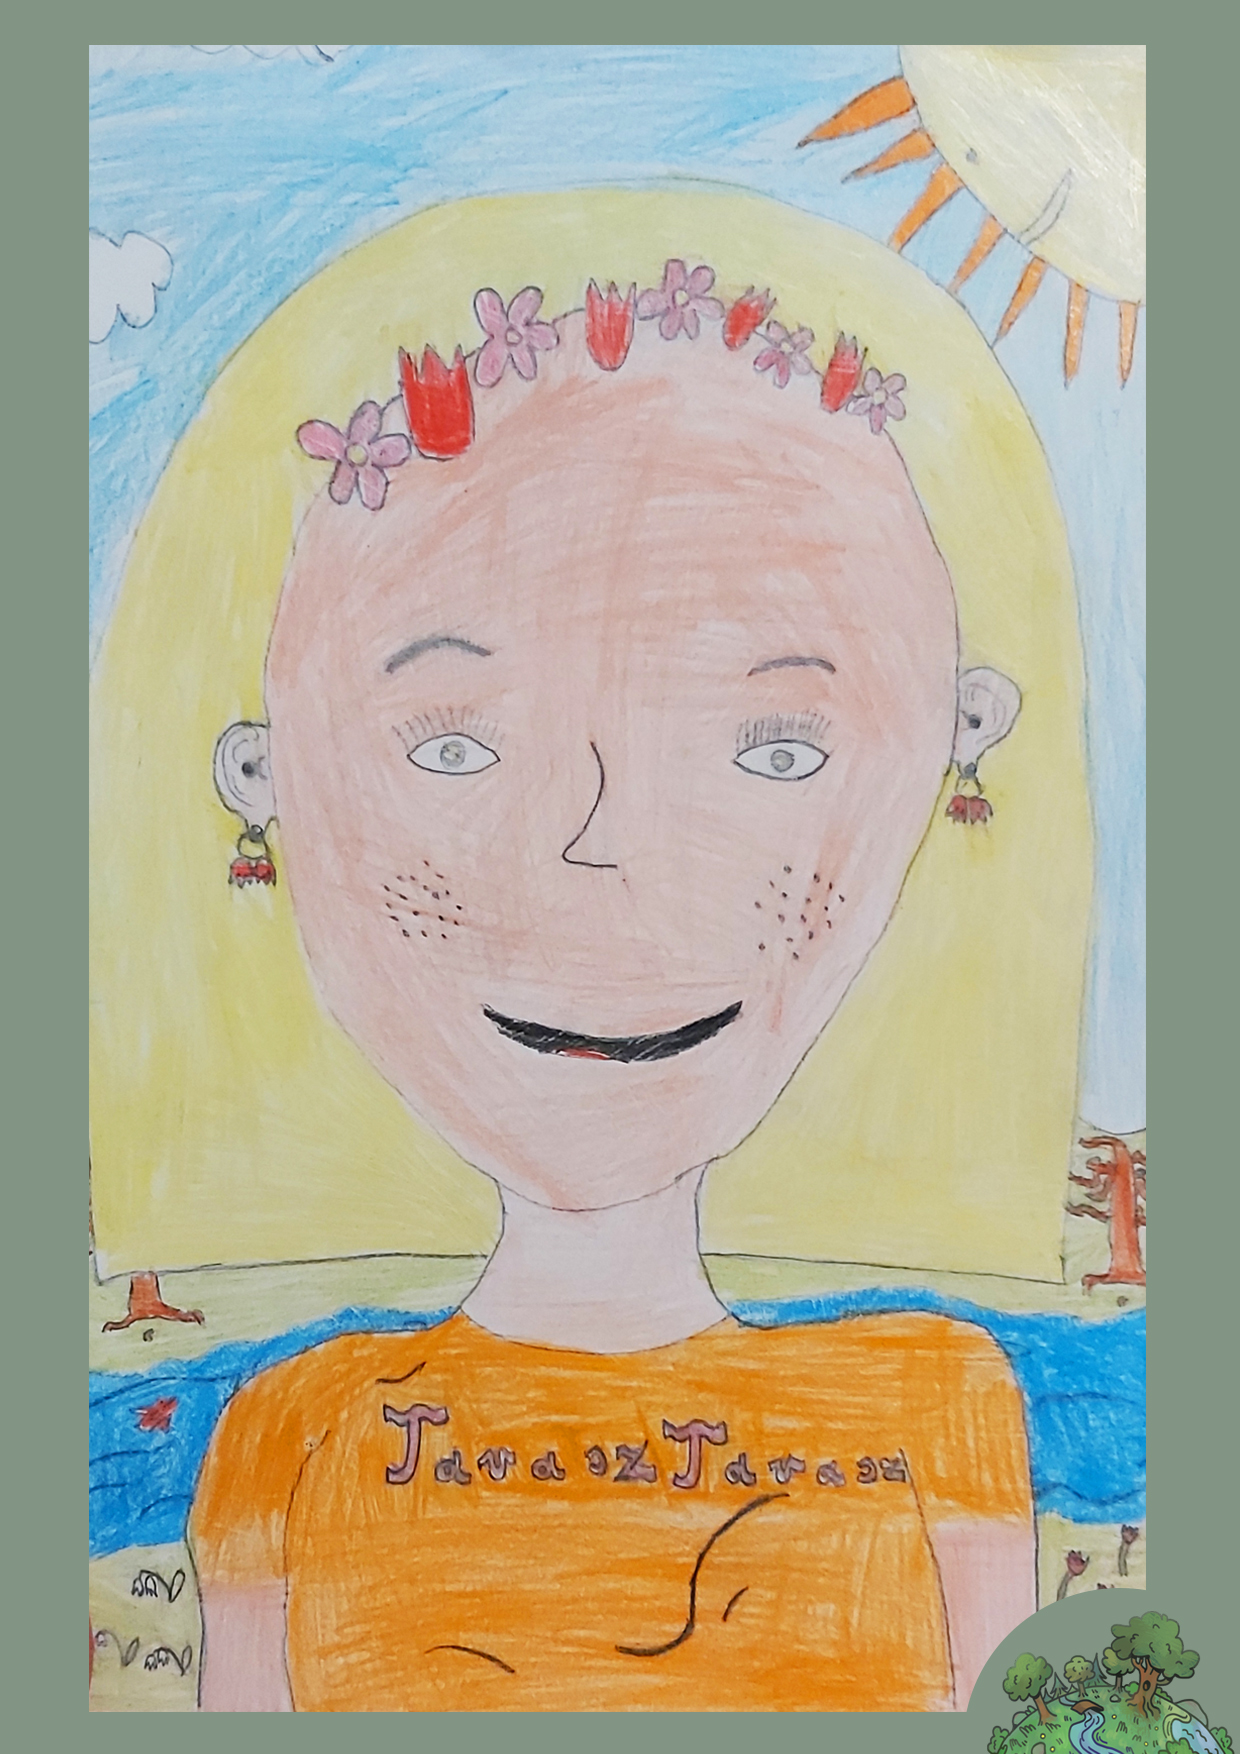 Tóth Dániel, 10 éves<br />A kép címe: A tavasztündér óvatos mosolya<br />Alkalmazott technika: színes ceruza